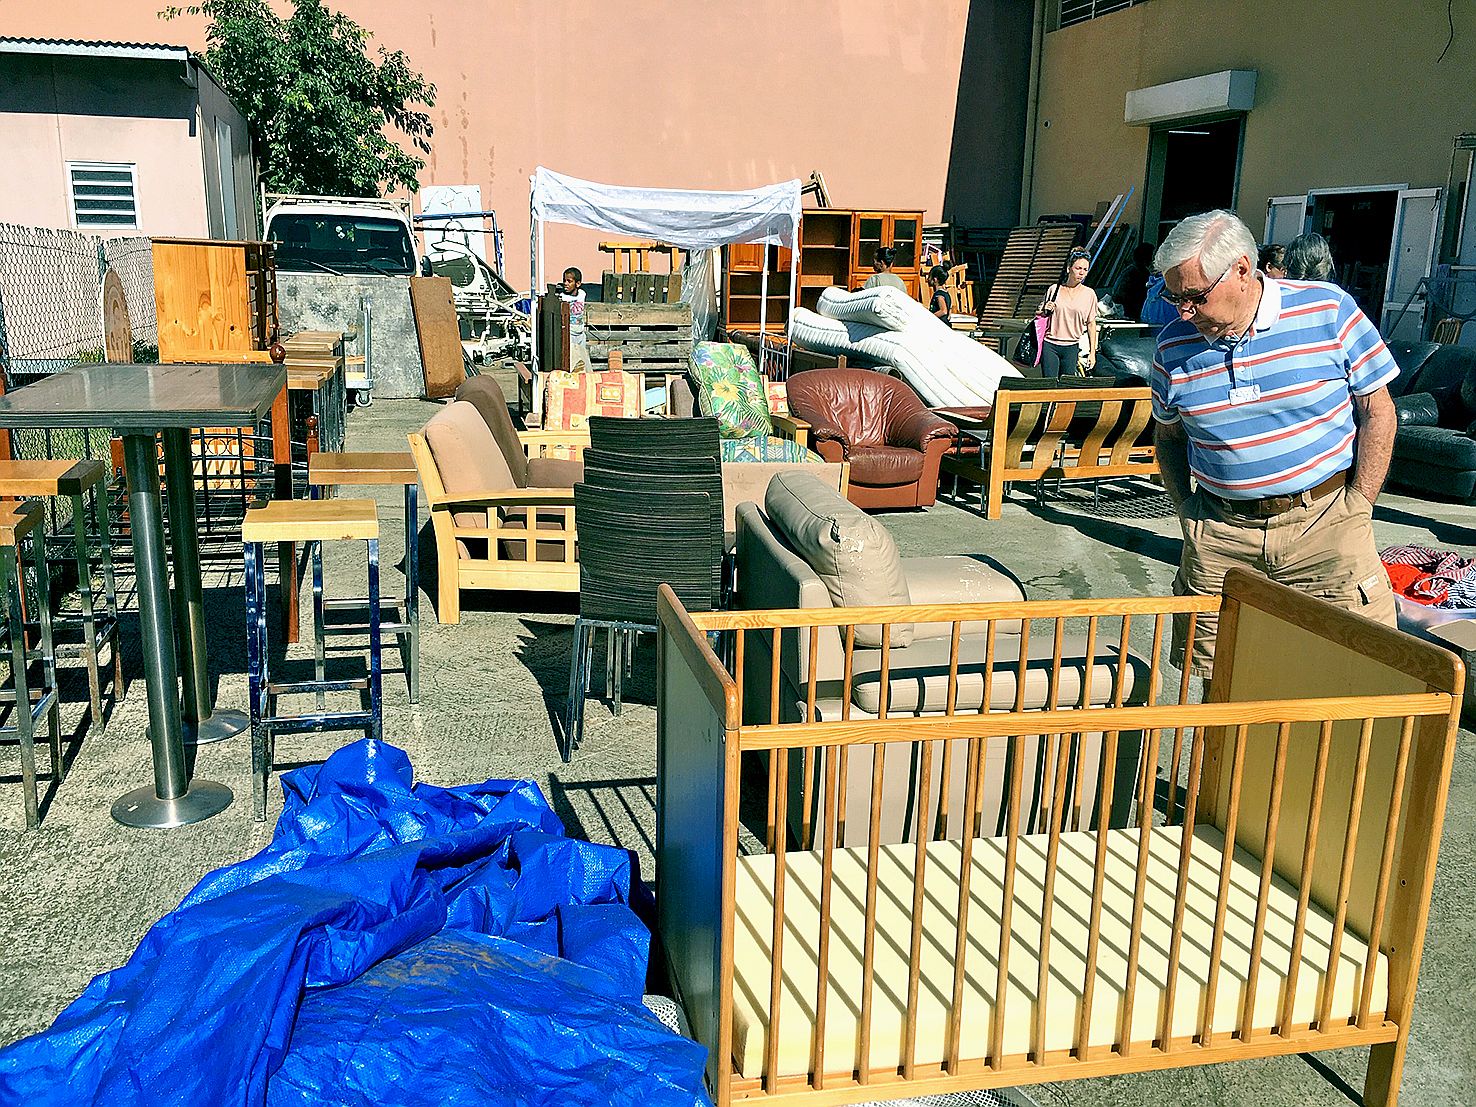 La société de Saint-Vincent-de-Paul a organisé une grande brocante pour déstocker ses meubles à Doniambo. Photo S.C.